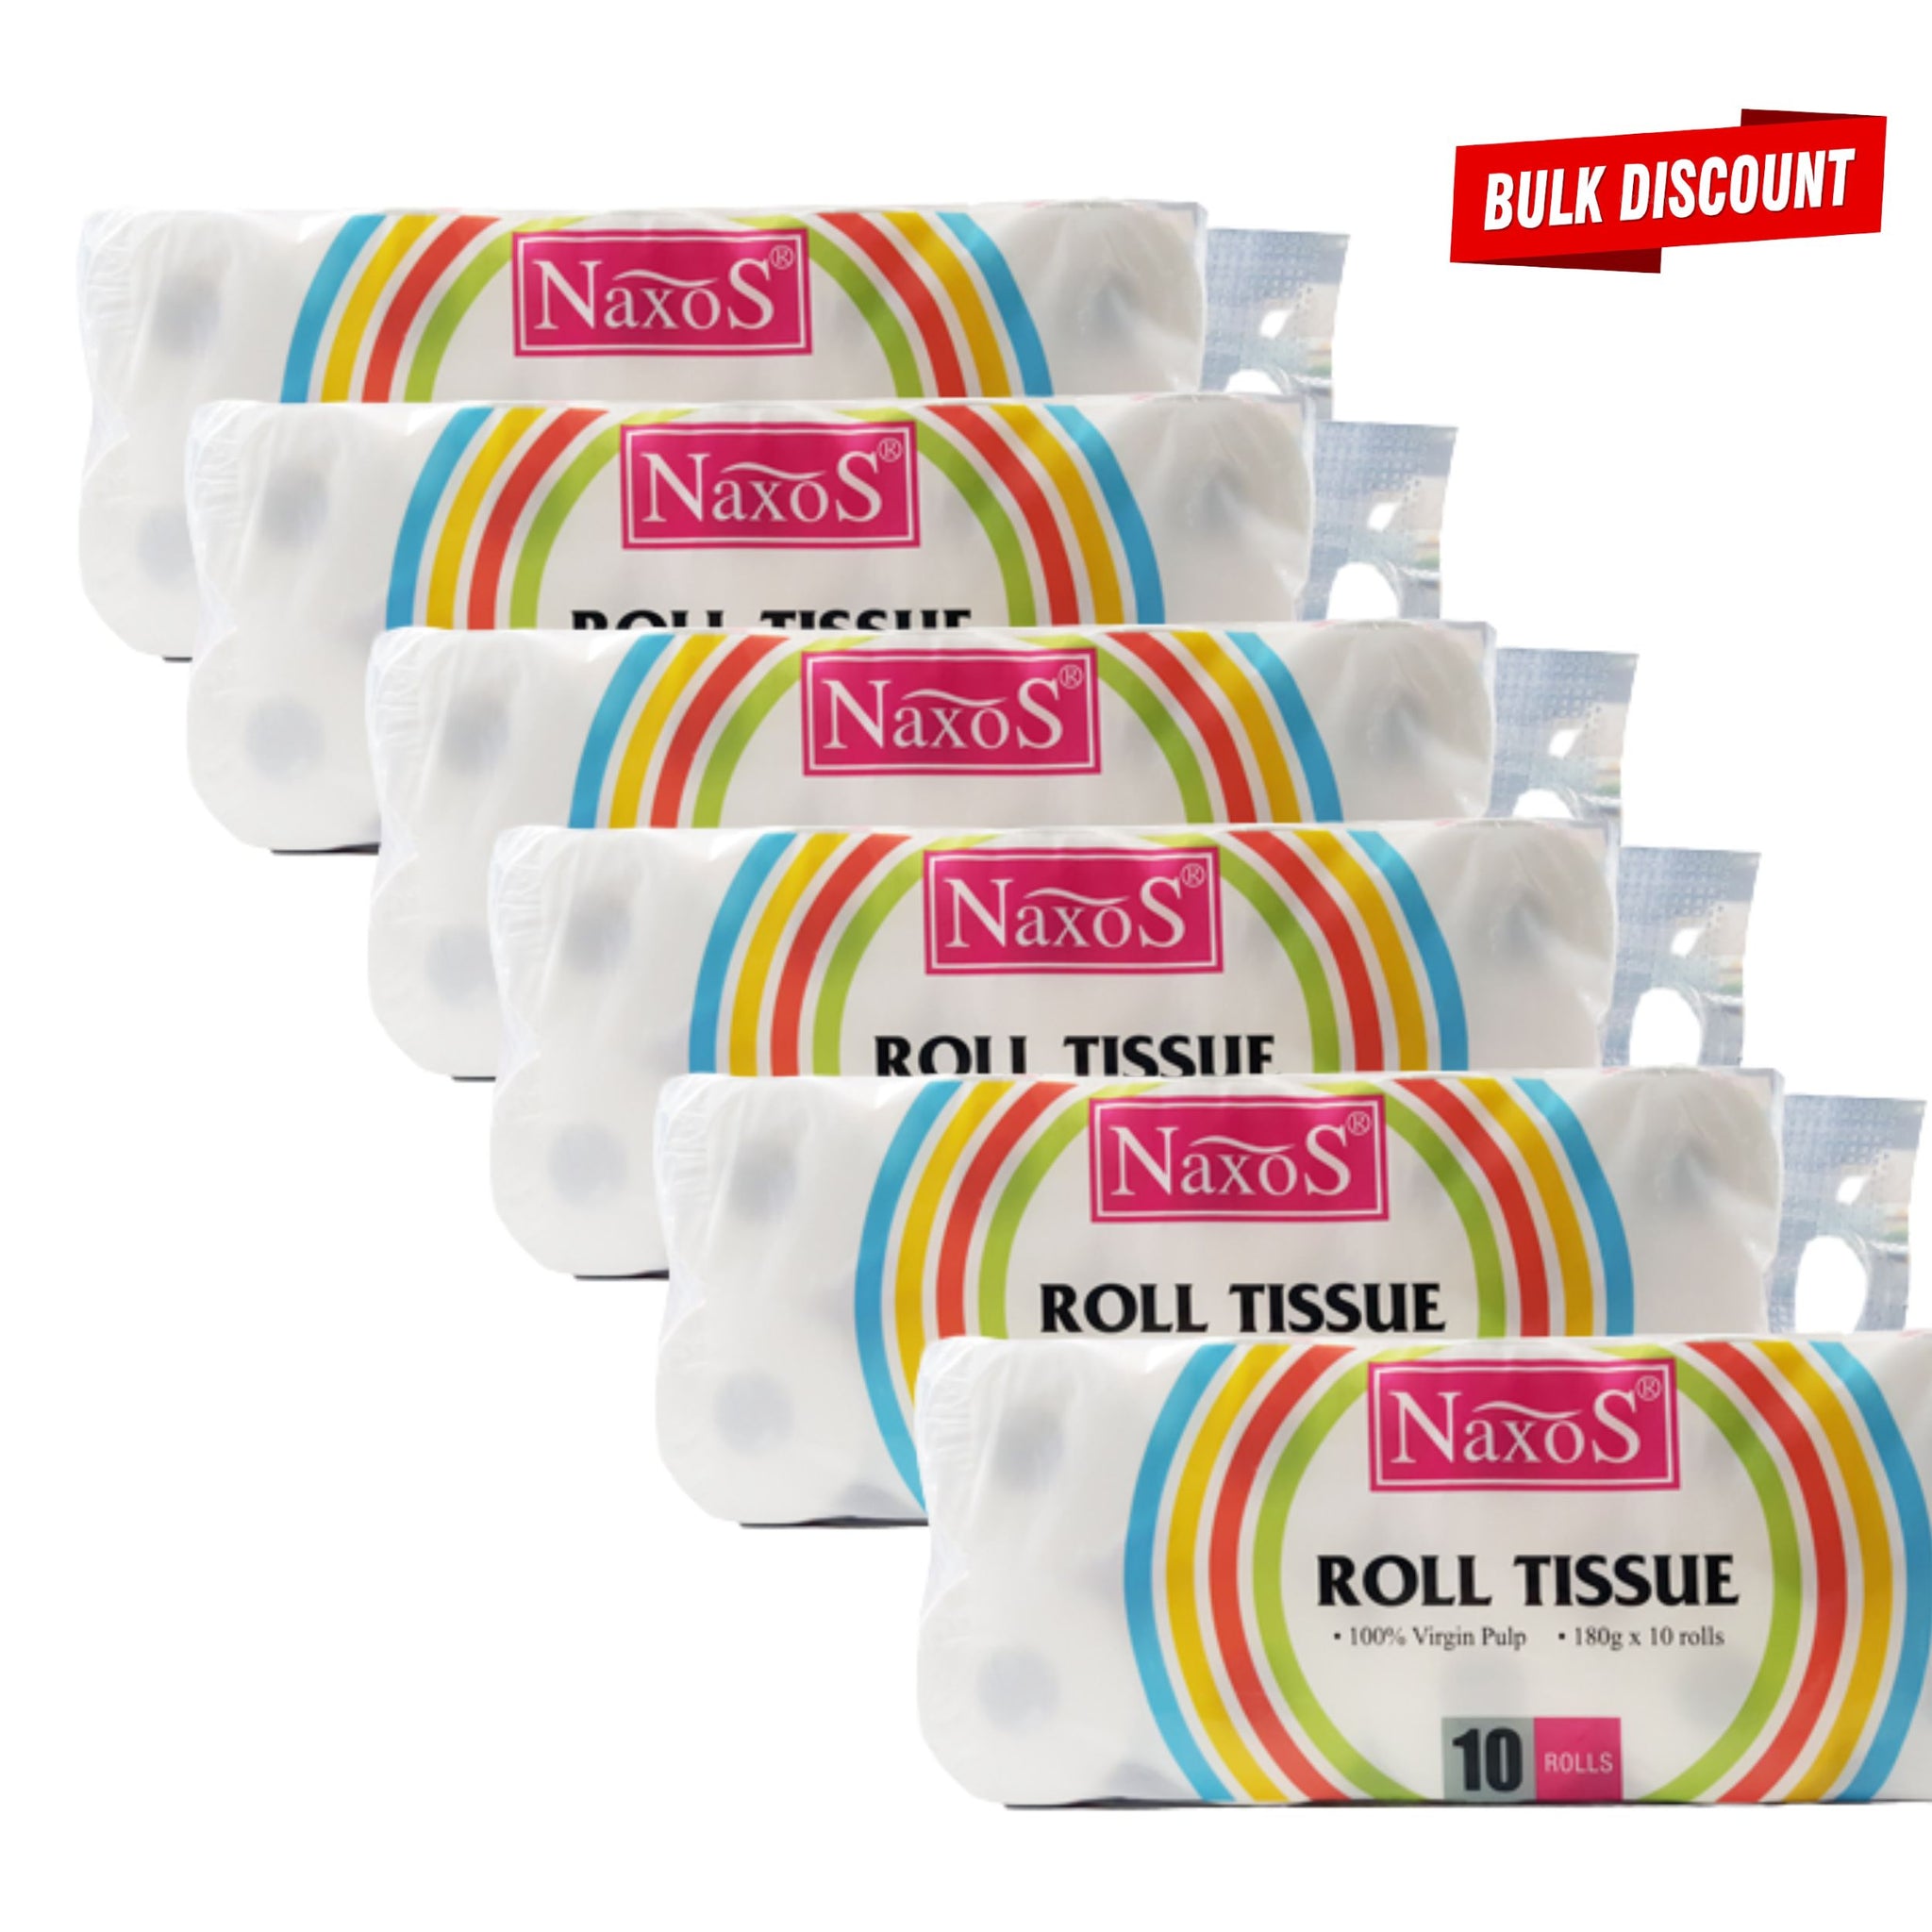 6 Naxos Bathroom Tissue 3 ply Roll